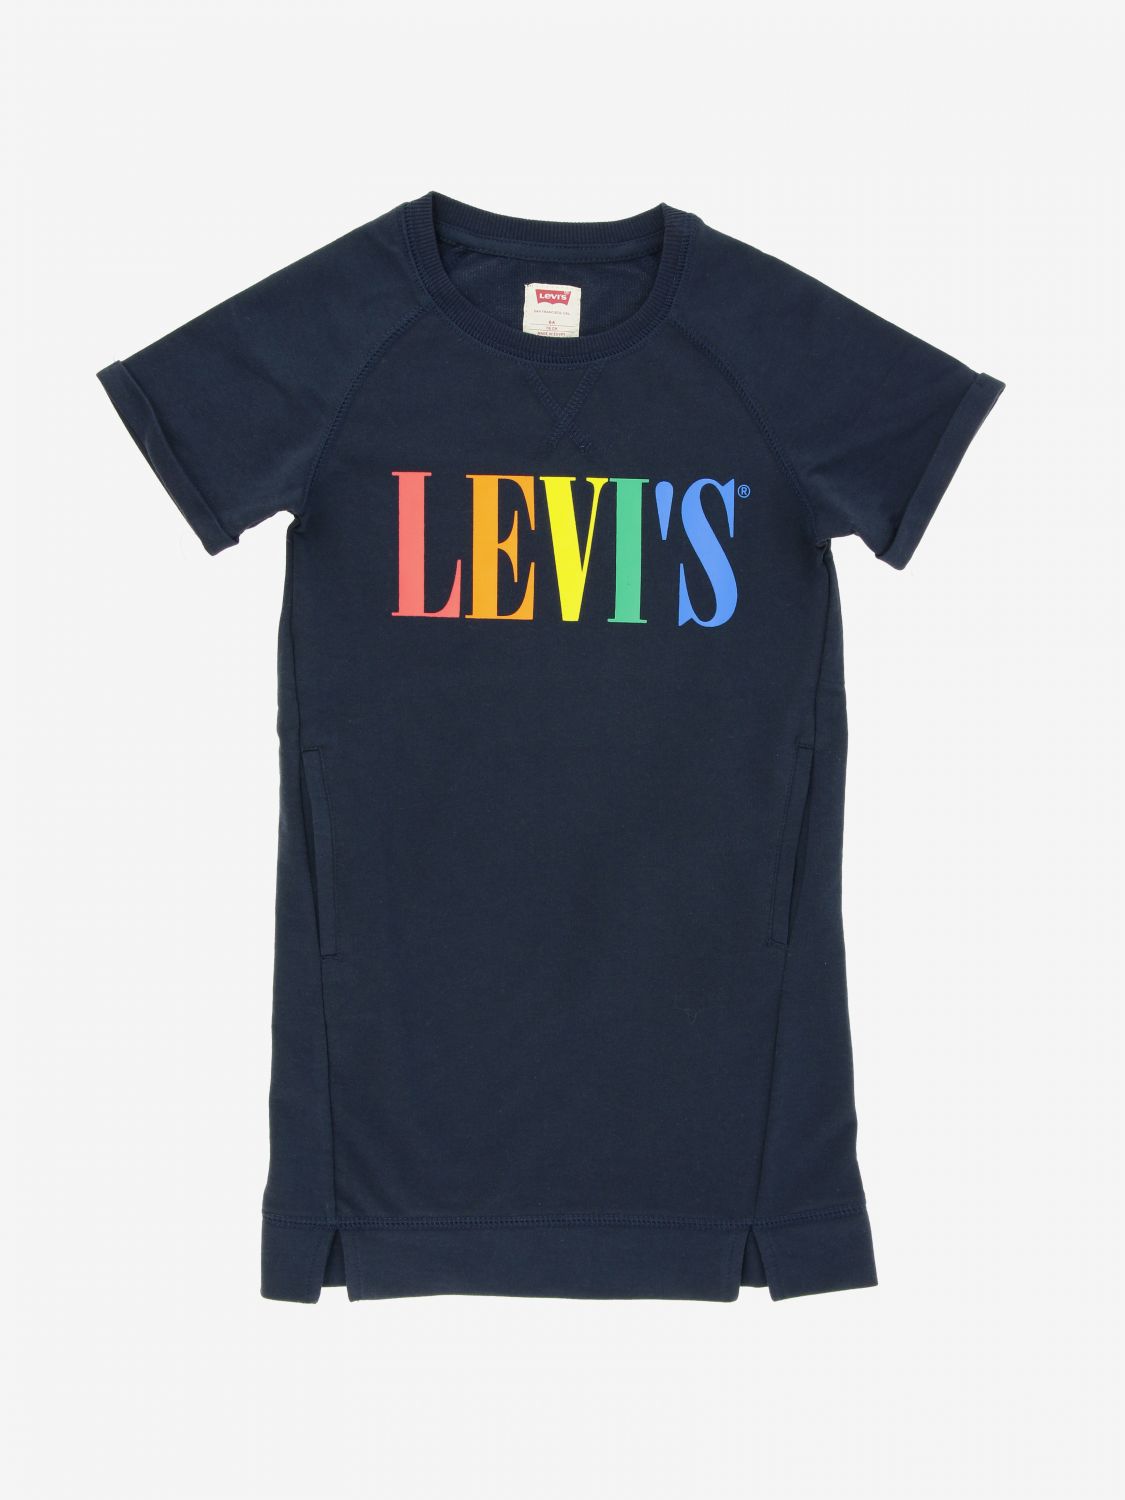 levis shirt dress